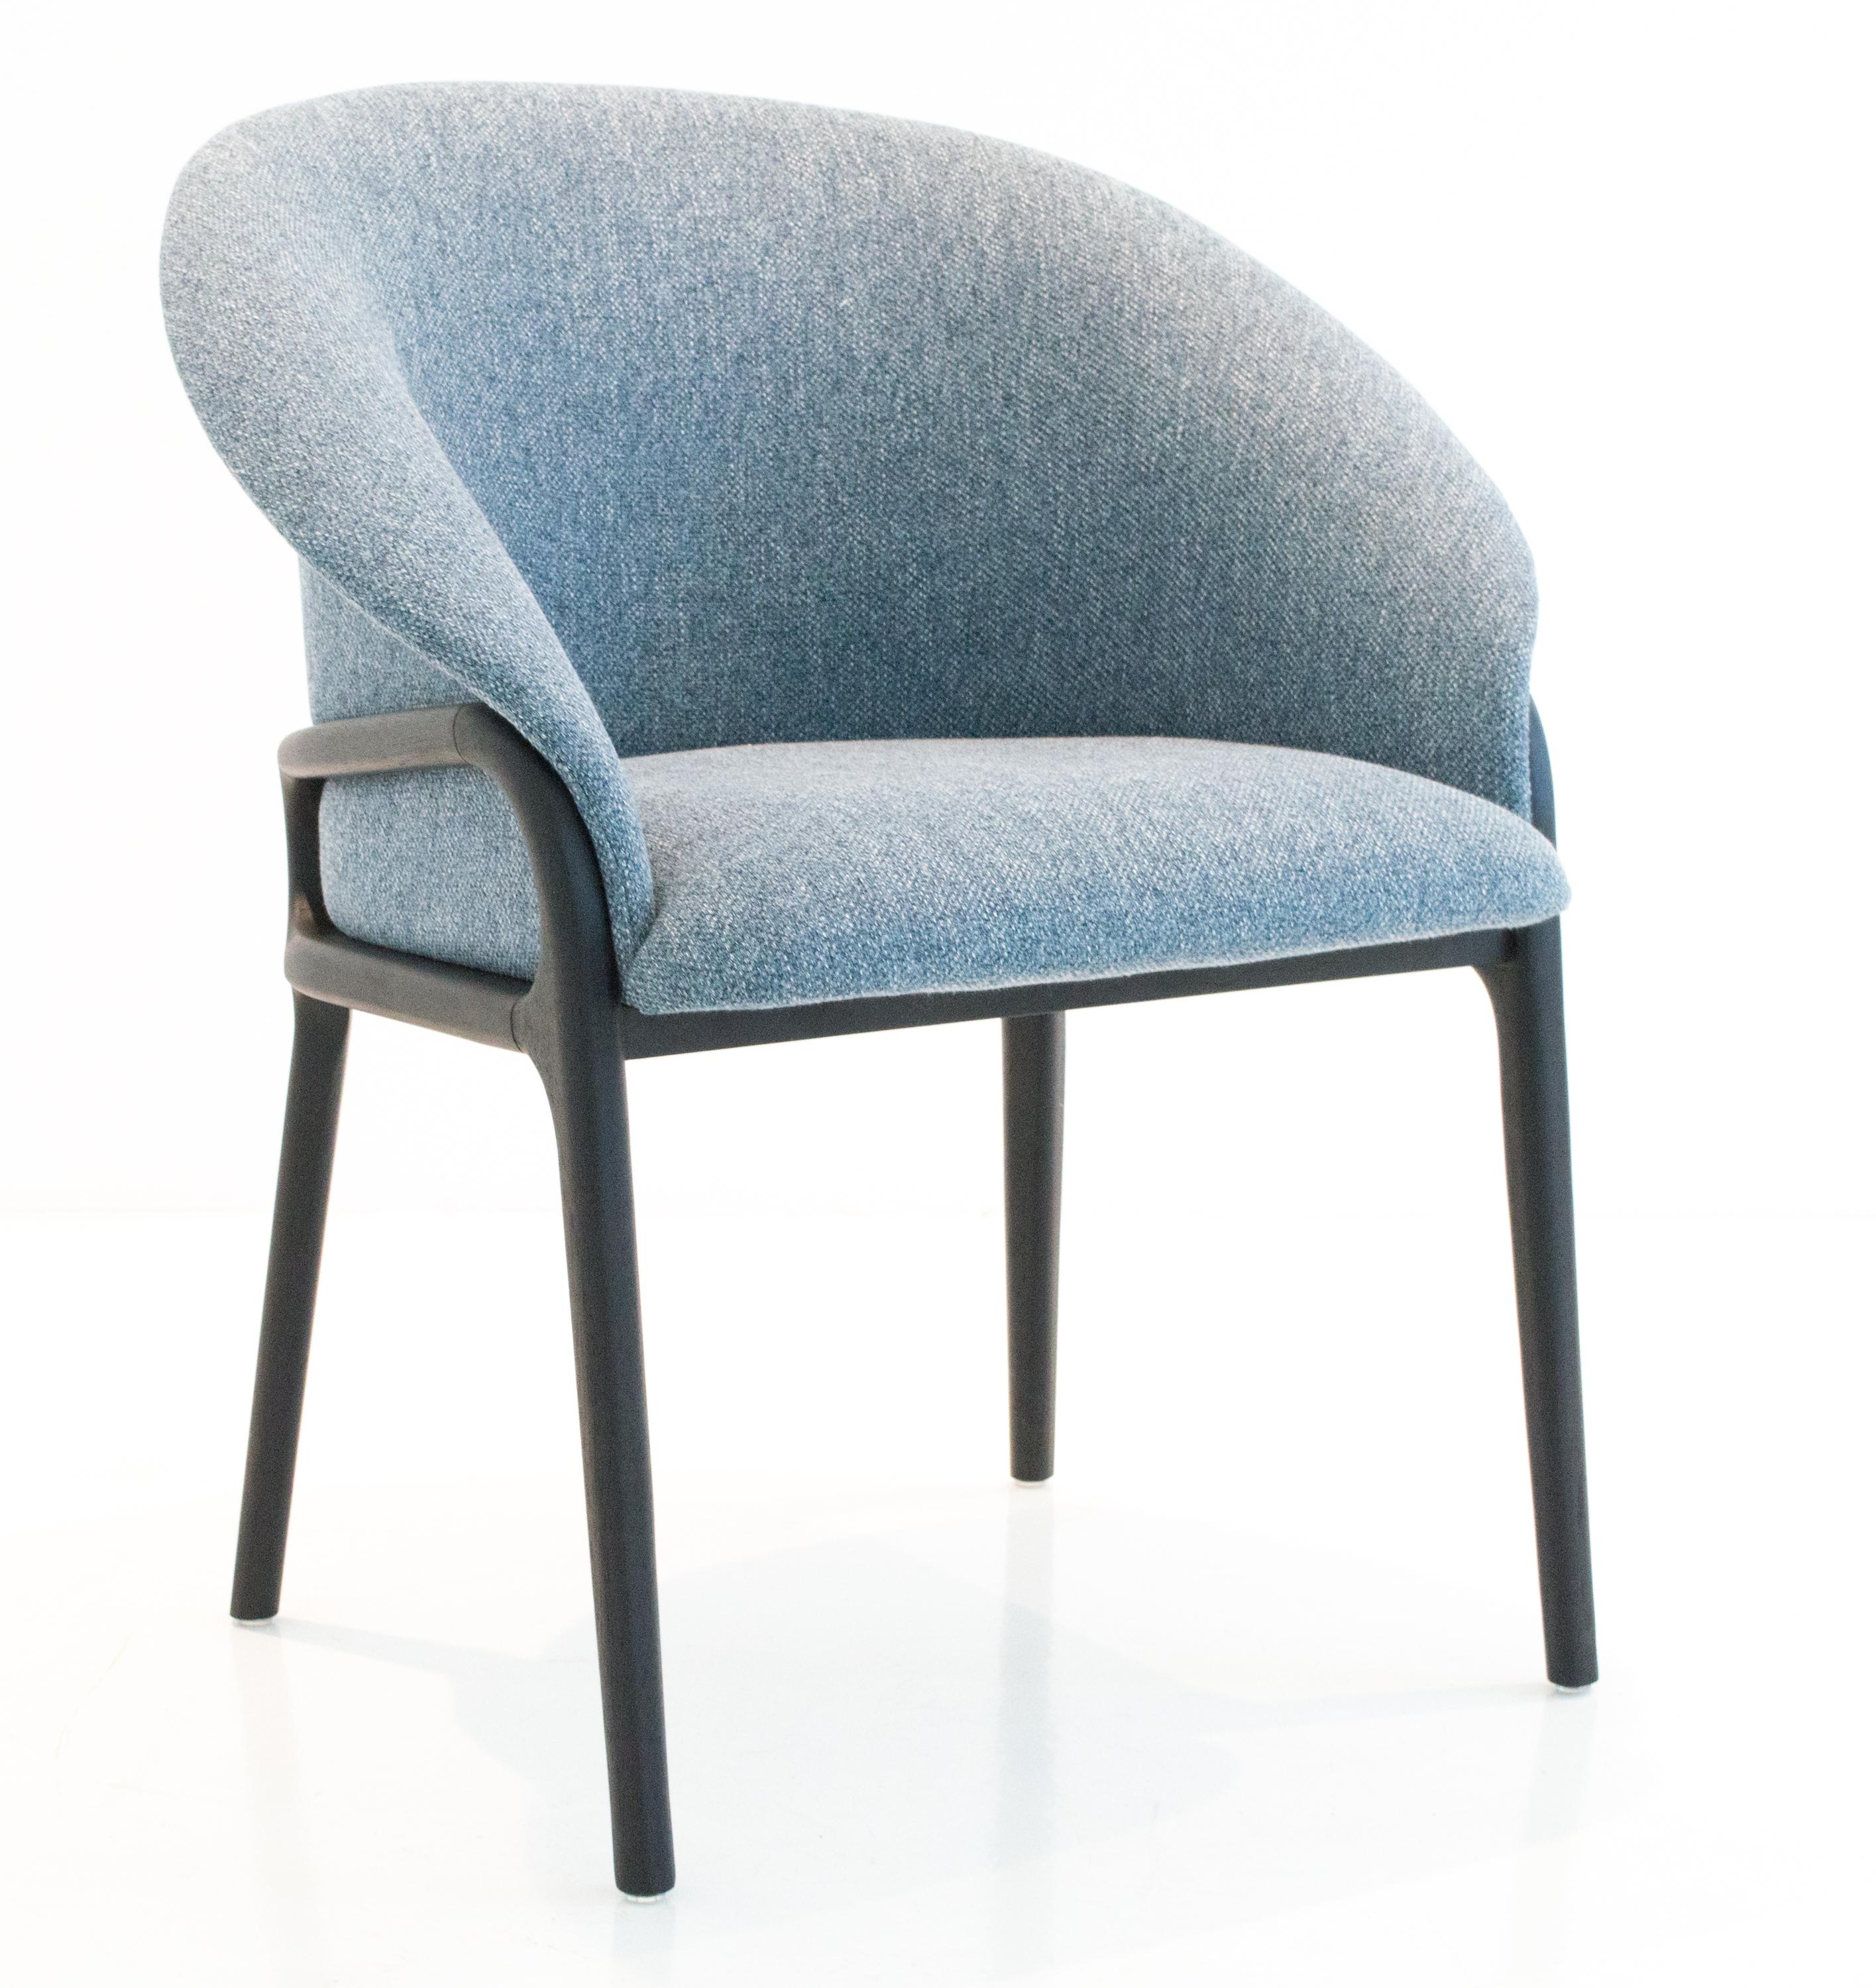 Cuir Chaise organique moderne en bois massif, assise flexible tapissée en vente